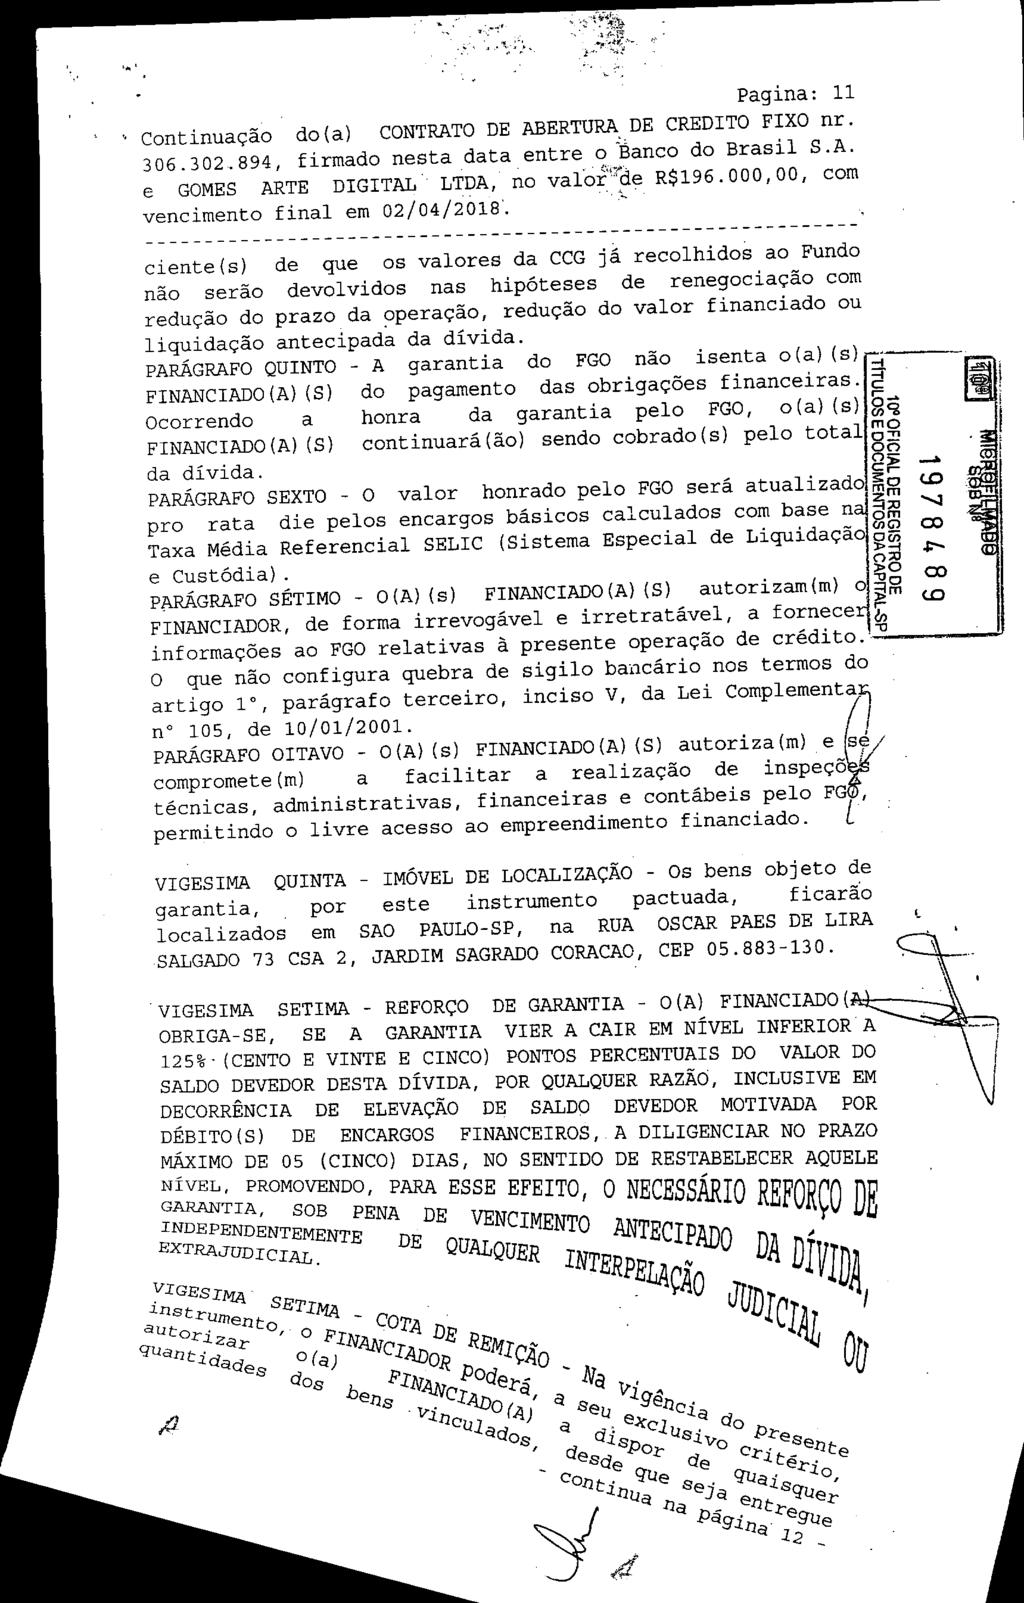 fls. 18 Este documento é cópia do original, assinado digitalmente por EDUARDO JANZON AVALLONE NOGUEIRA e Tribunal de Justica Sao Paulo, protocolado em 20/05/2015 às 19:04, sob o número